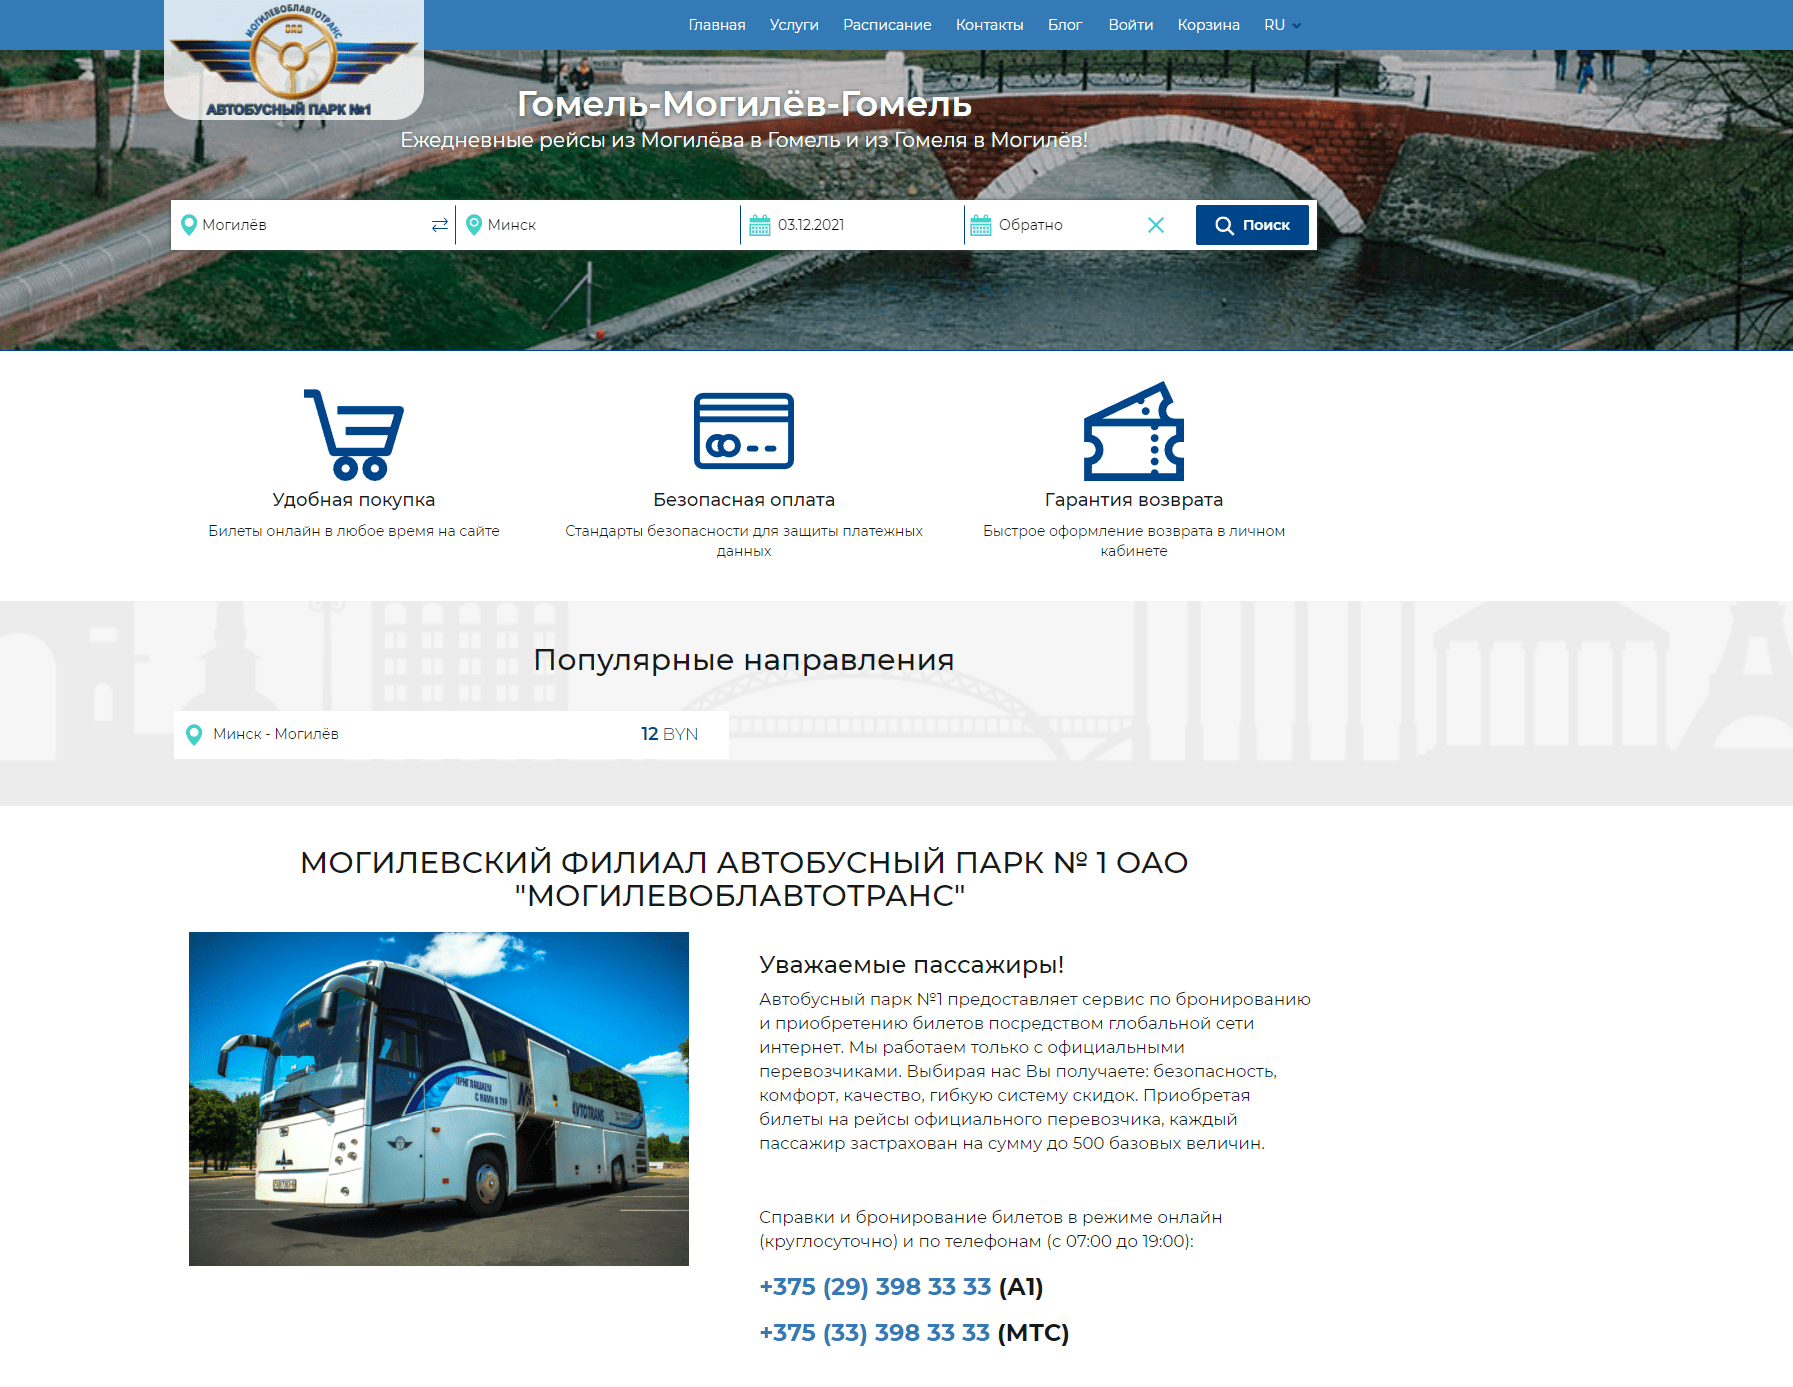 Автобусный парк №1 запустил новый сервис «Konduktor.by»